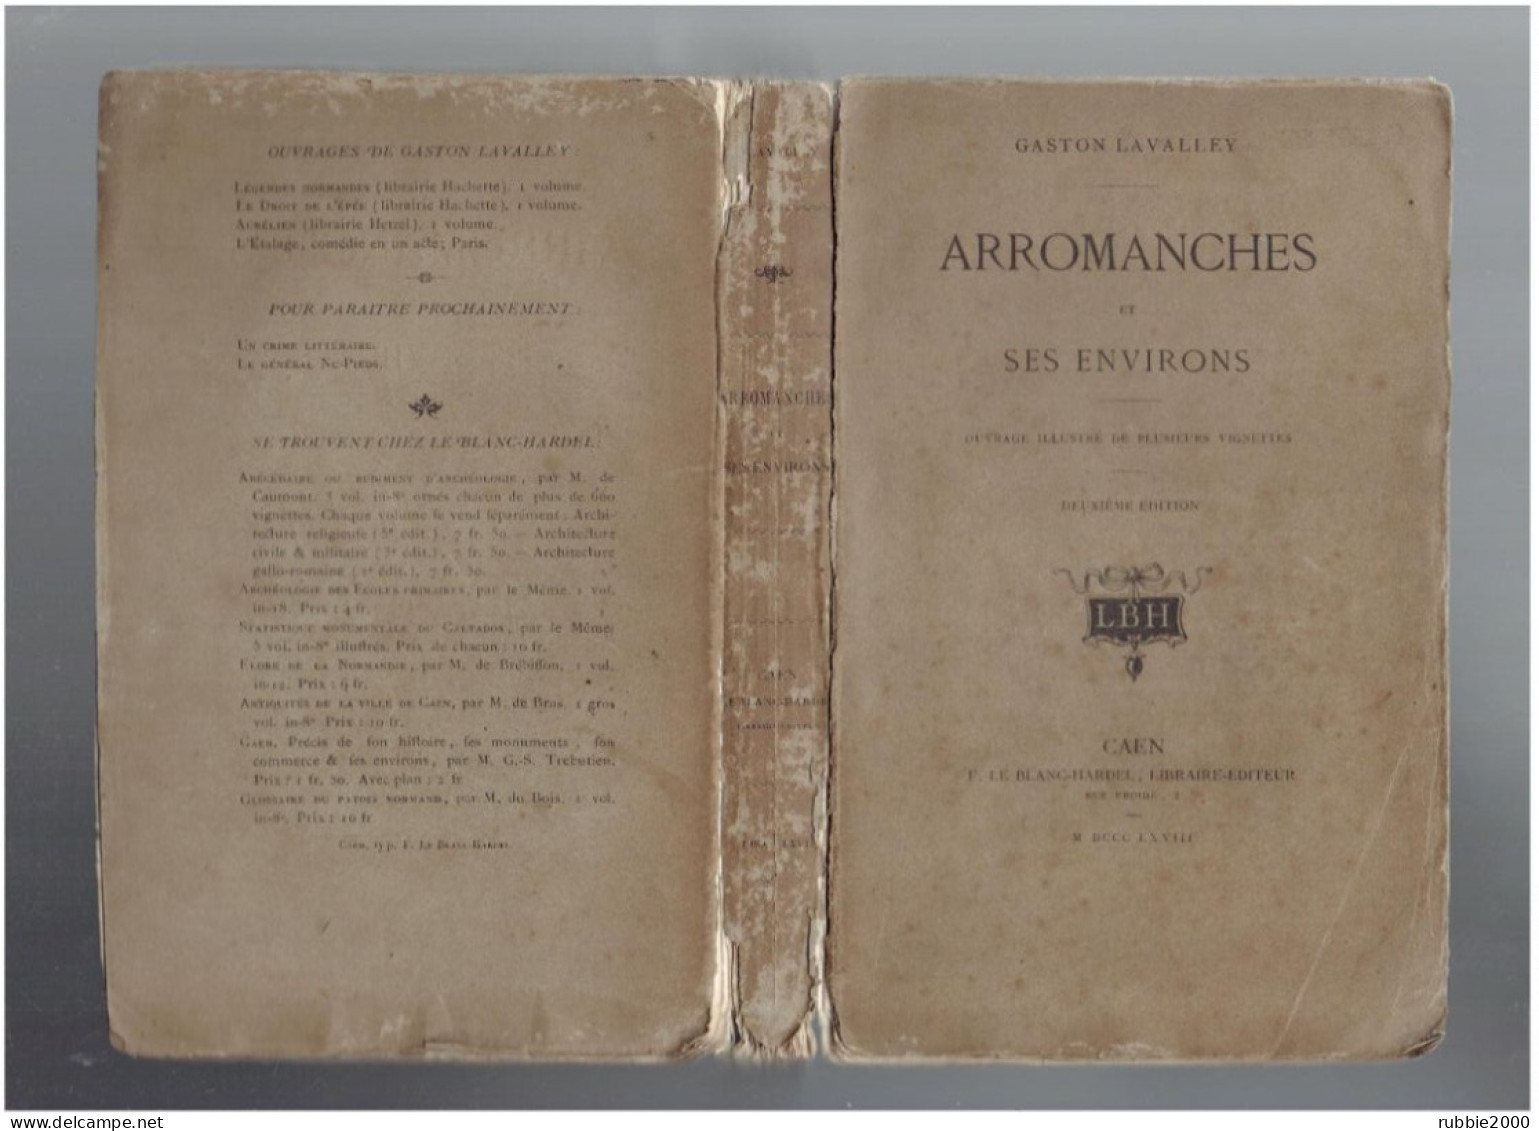 ARROMANCHES ET SES ENVIRONS 1868 PAR GASTON LAVALLEY OUVRAGE ILLUSTRE DE PLUSIEURS VIGNETTES 2° EDITION - Normandie